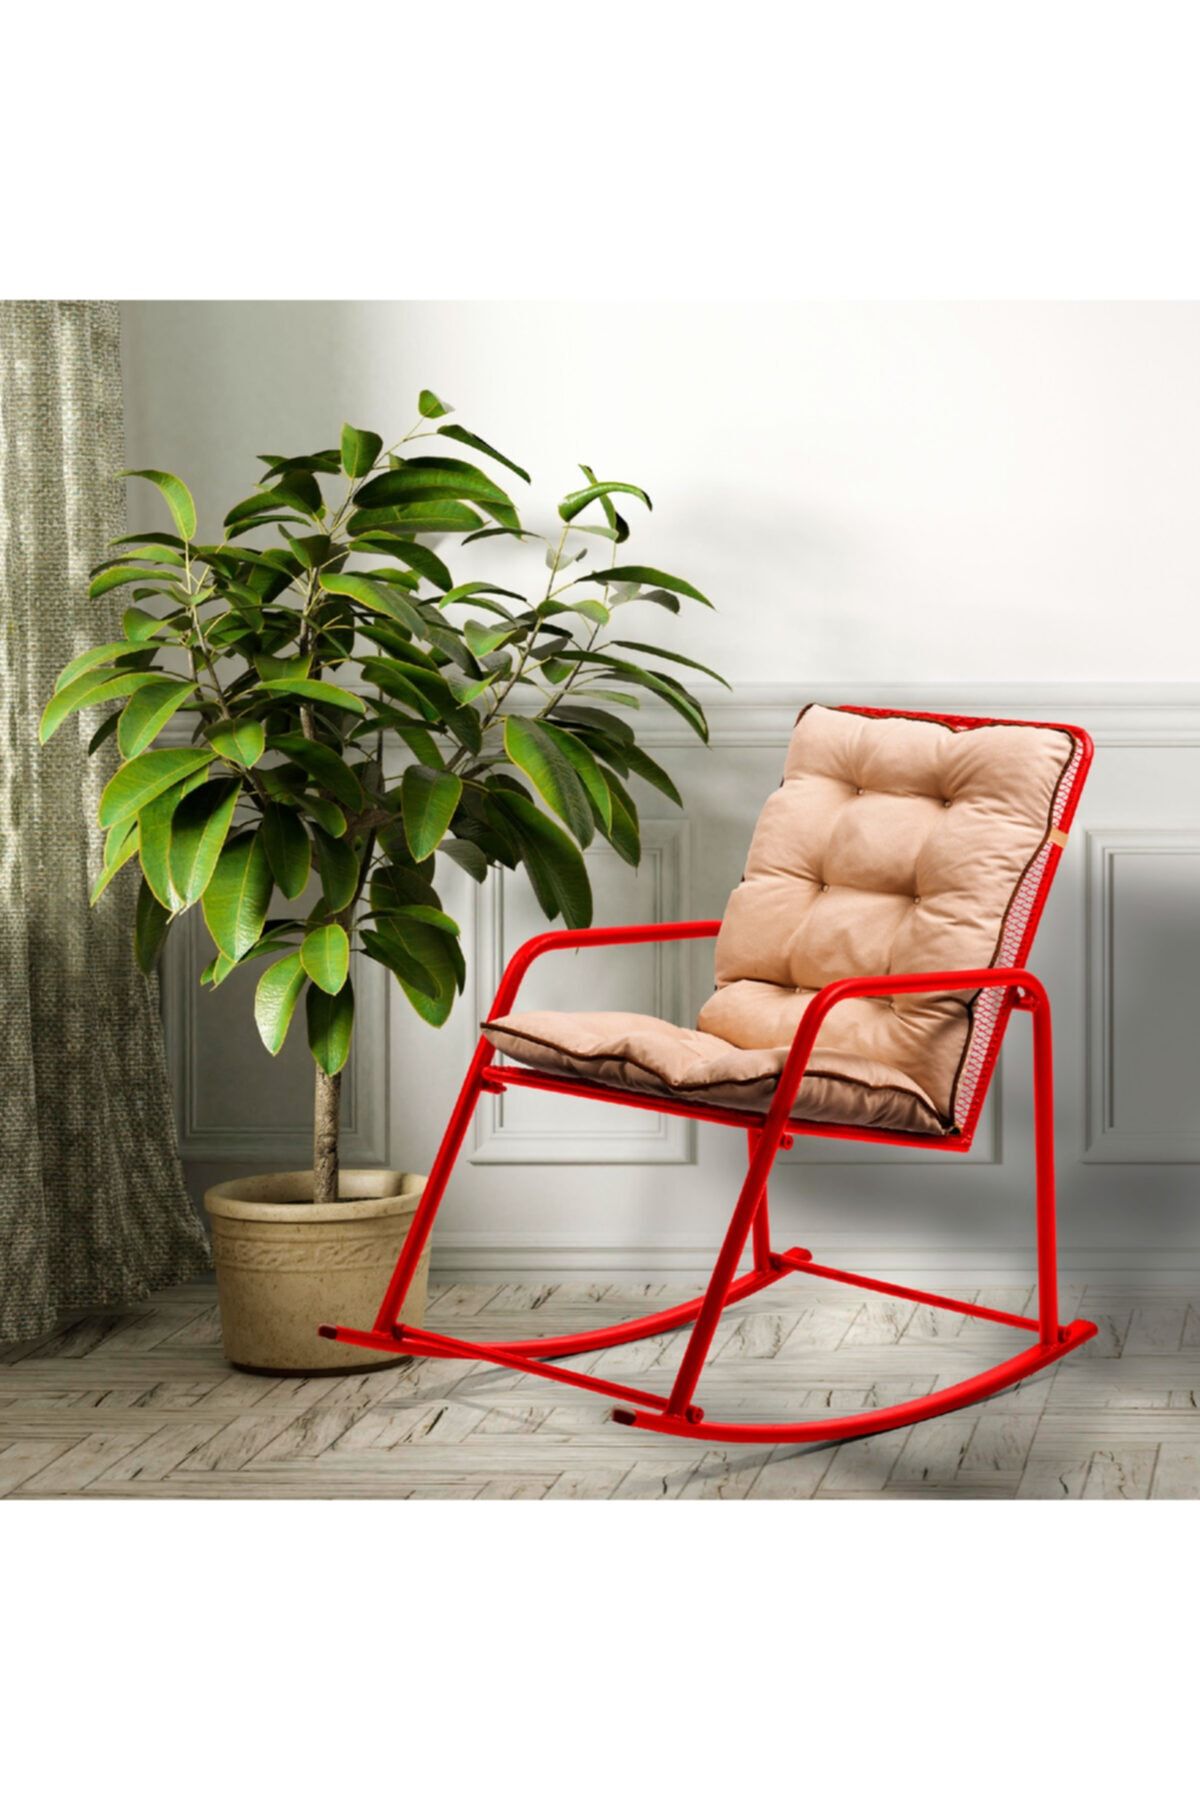 Retodesign Minderli Kırmızı Metal Sallanan Sandalye